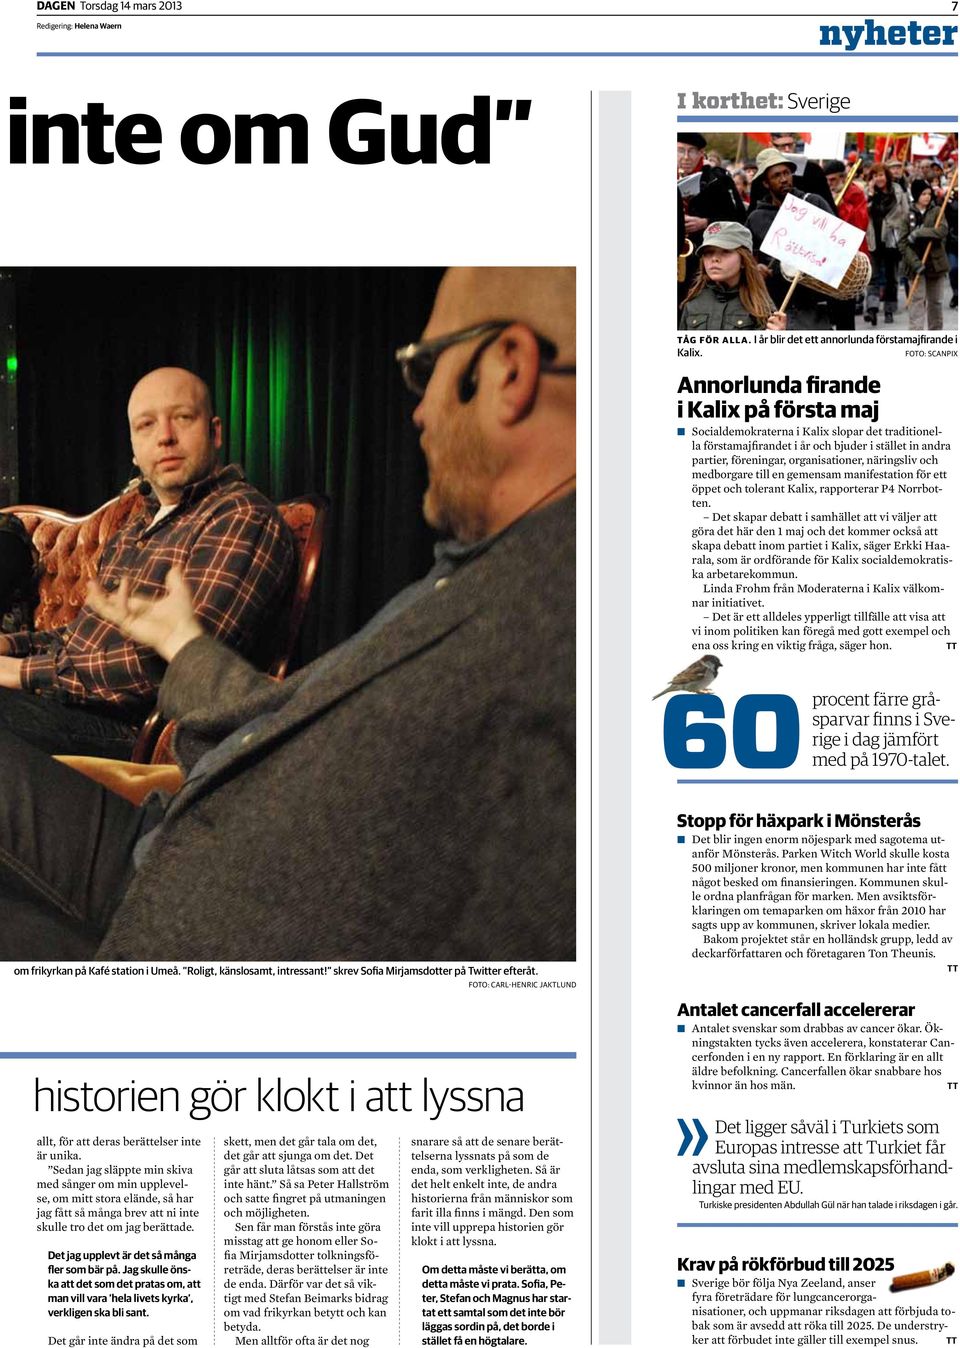 näringsliv och medborgare till en gemensam manifestation för ett öppet och tolerant Kalix, rapporterar P4 Norrbotten.